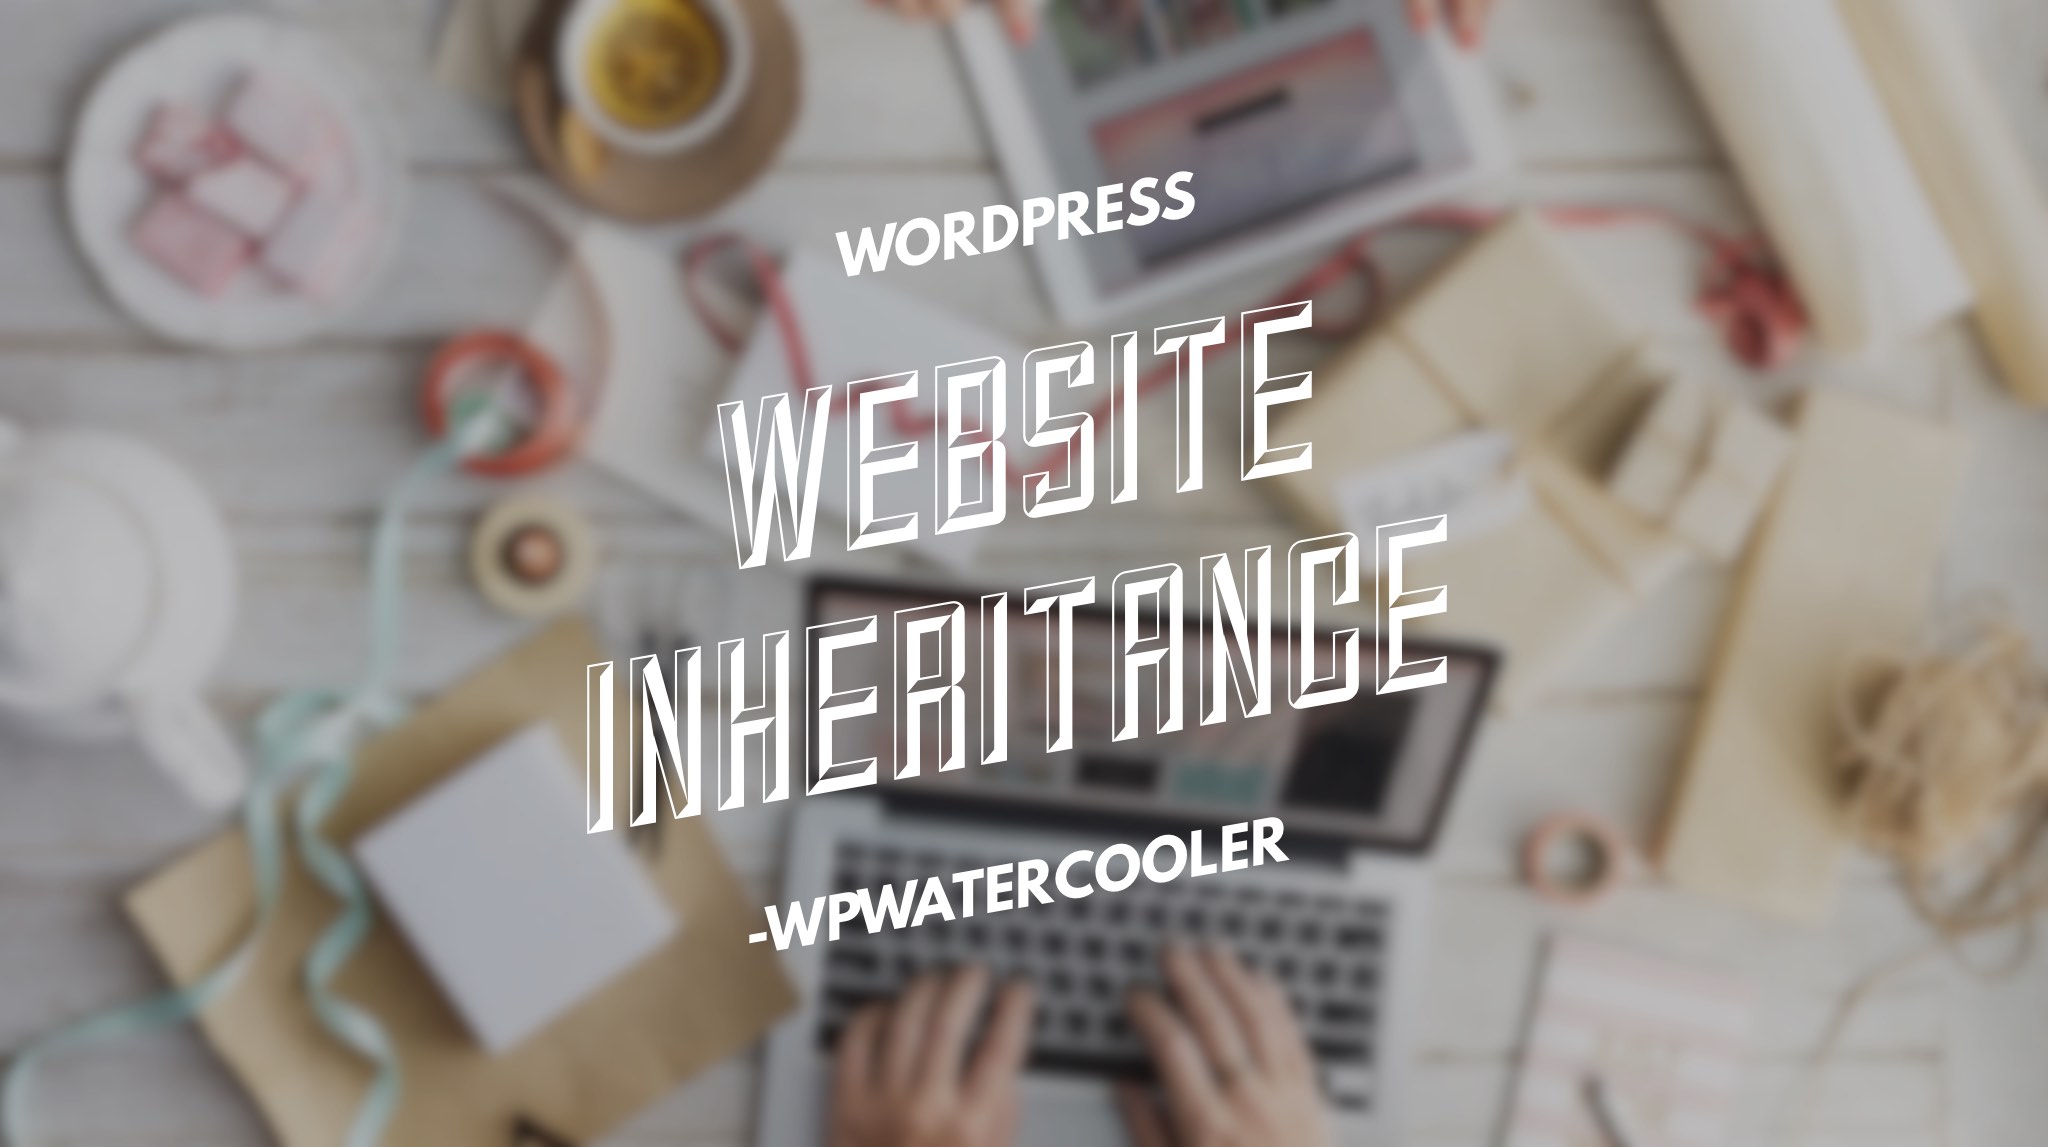 EP267 – Website Inheritance – WPwatercooler